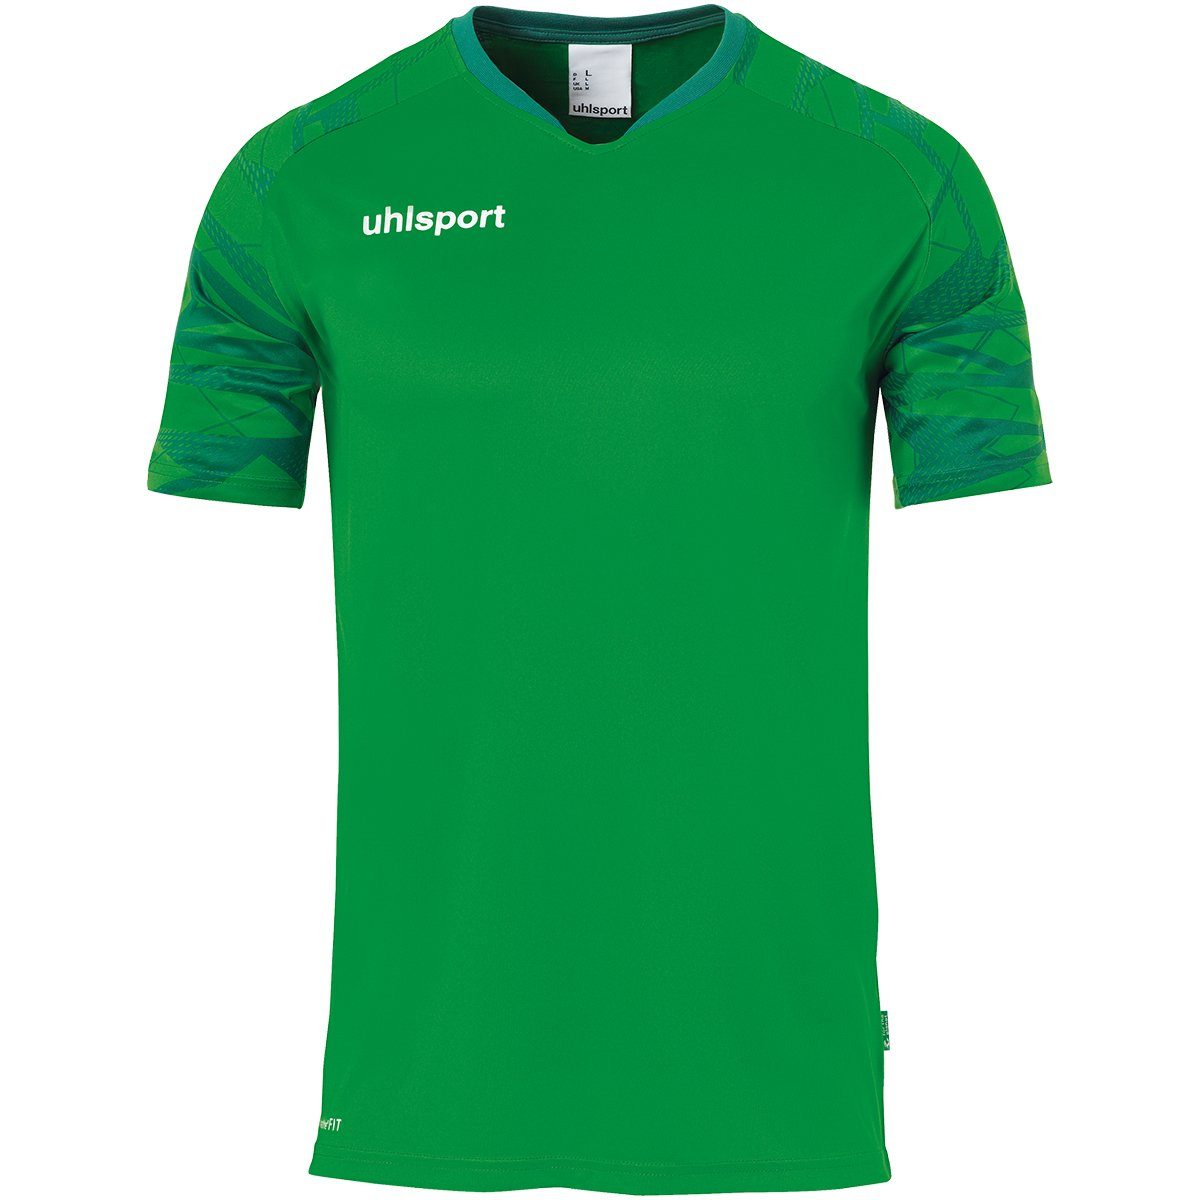 TRIKOT GOAL grün/lagune KURZARM Trainings-T-Shirt Trainingsshirt uhlsport atmungsaktiv uhlsport 25